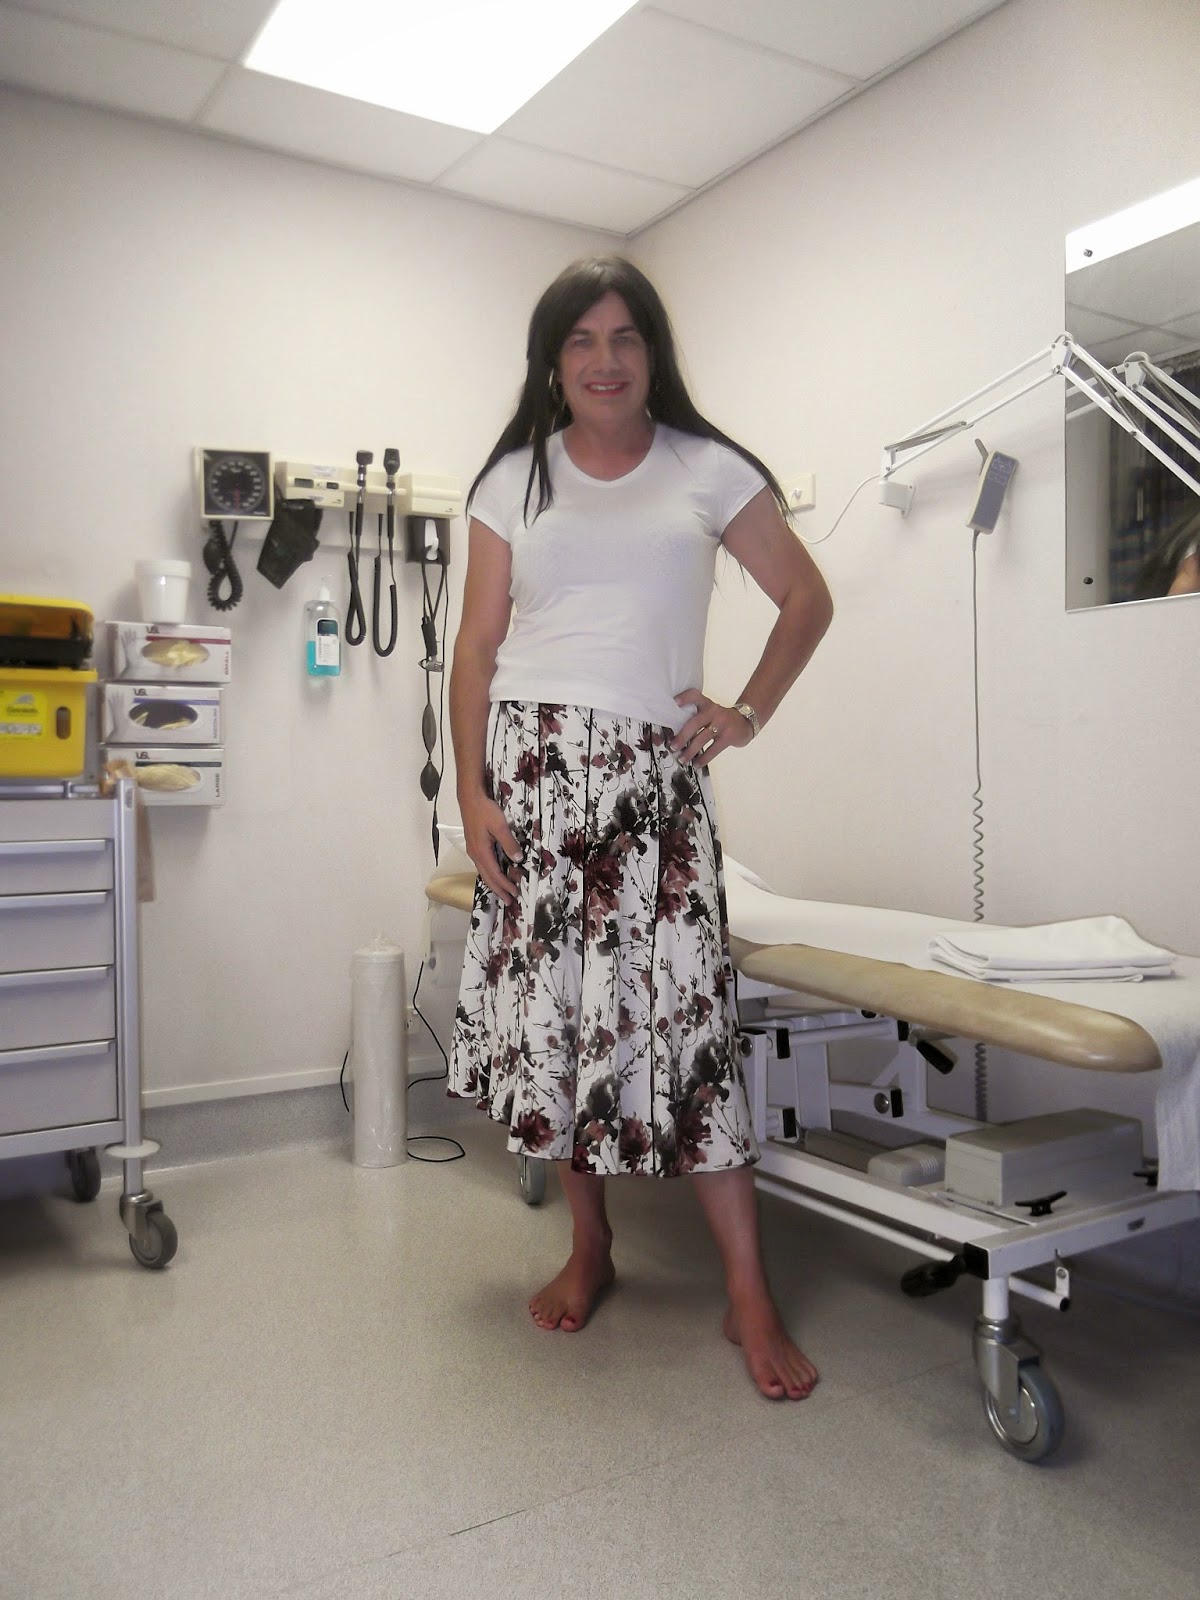 Rachel Life As A Crossdresser Doctors Visit